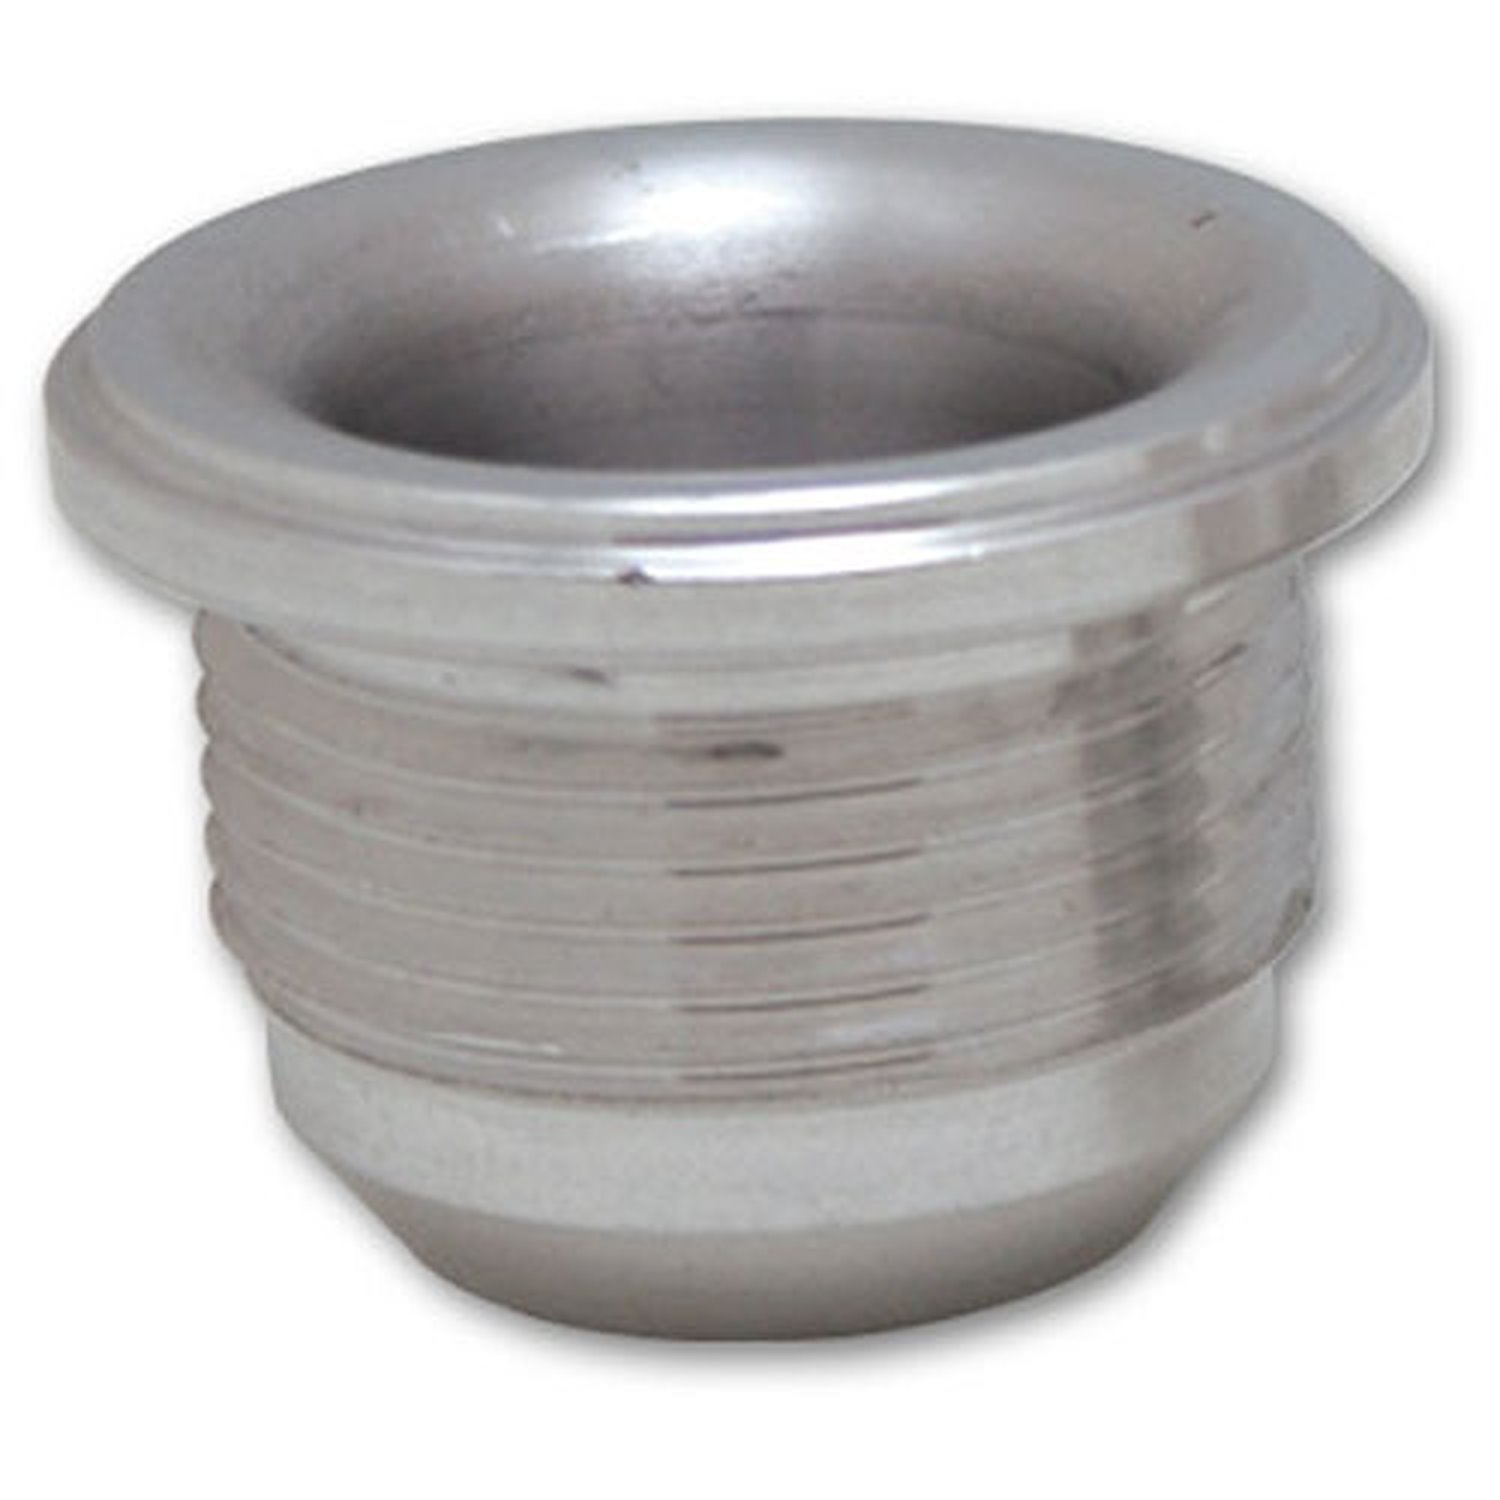 Male -16AN Aluminum Weld Bung 1-5/16" - 12 SAE Thread